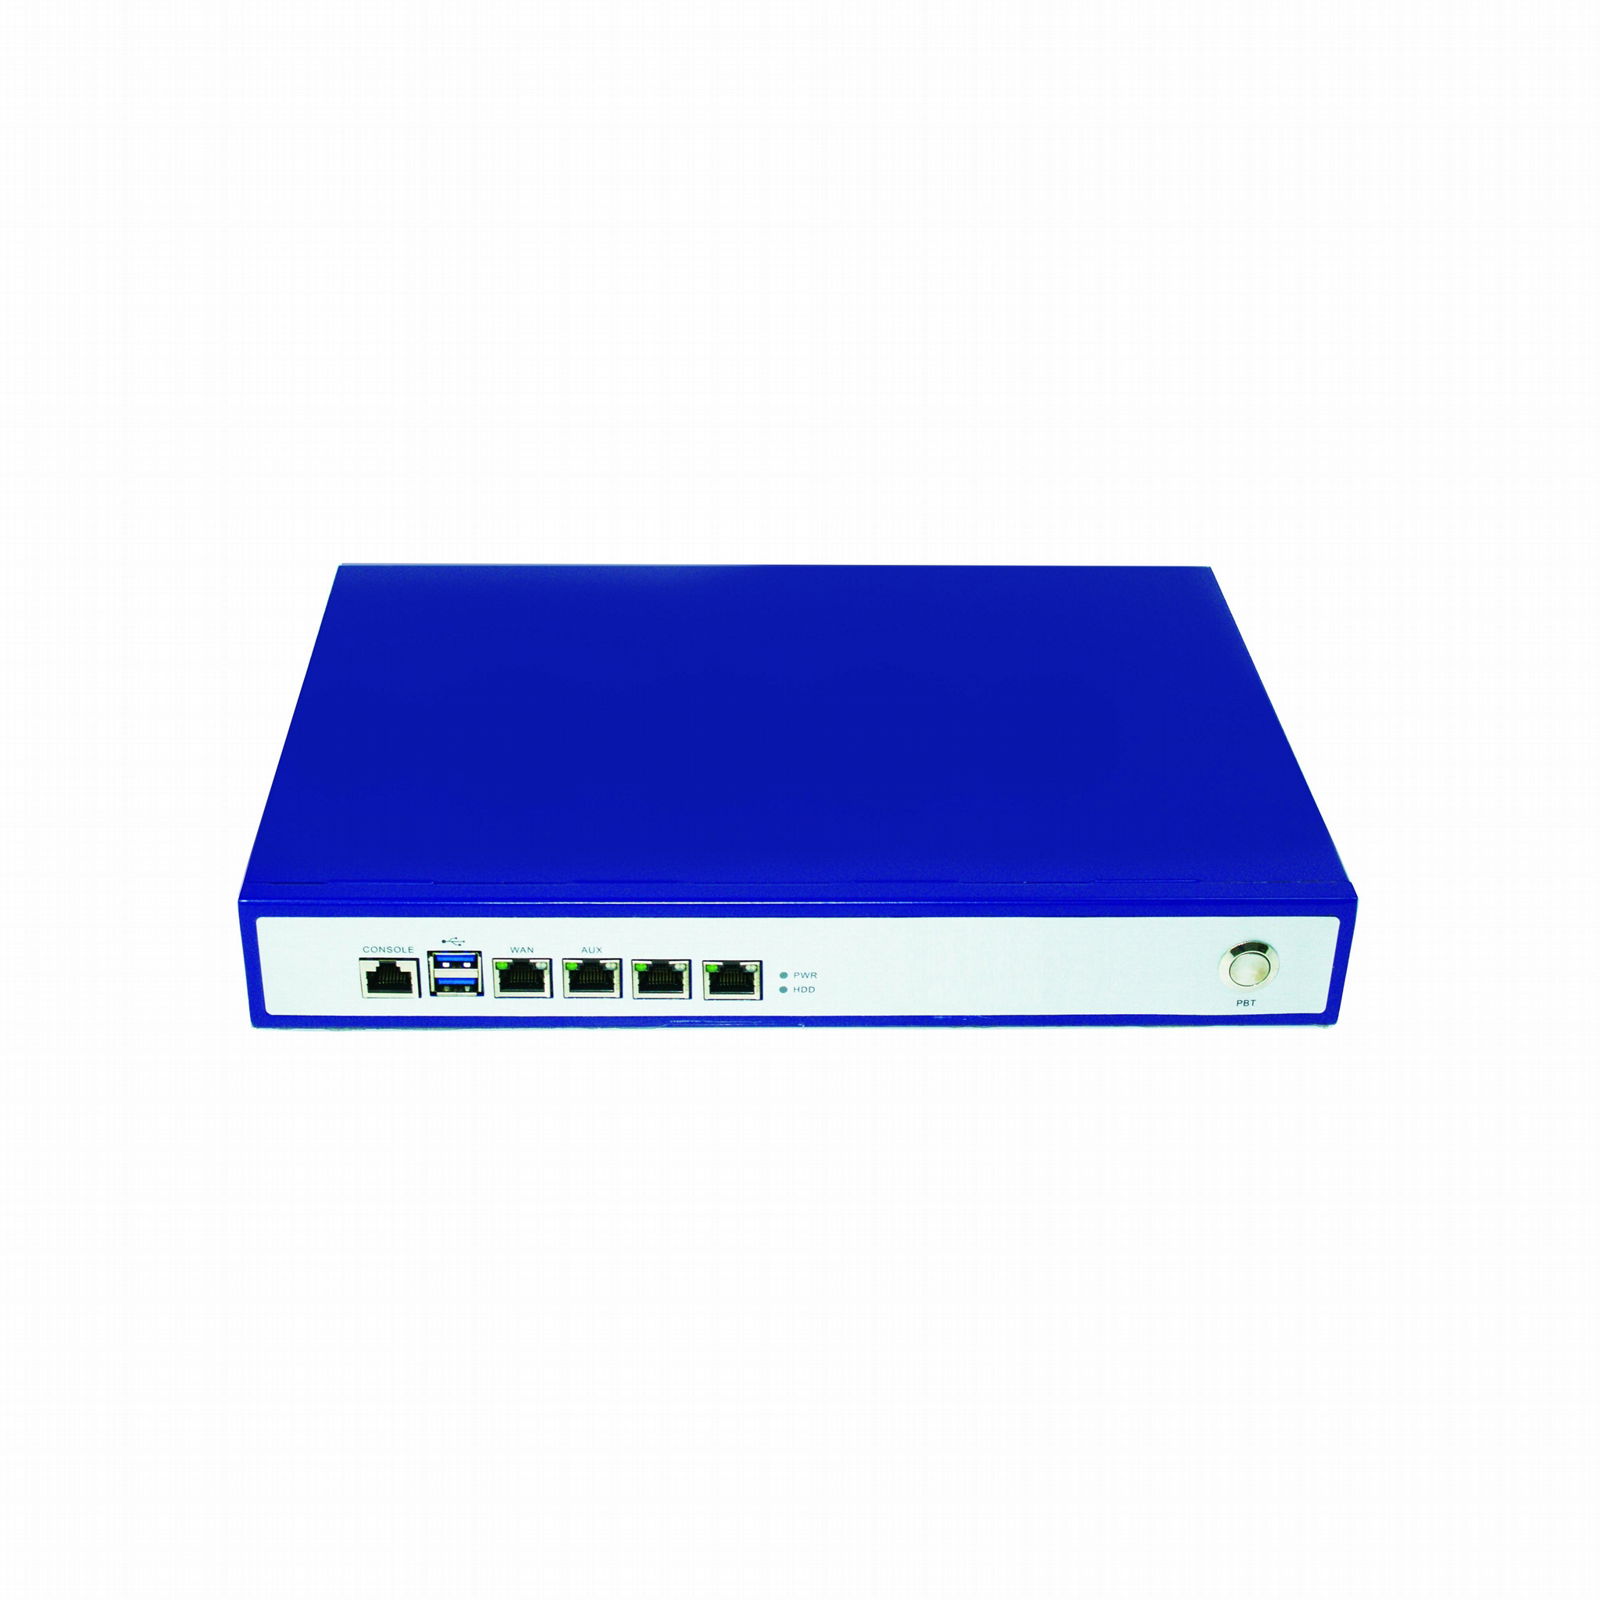 桌面型網絡安全硬件平台用於VPN防火牆F19401 3